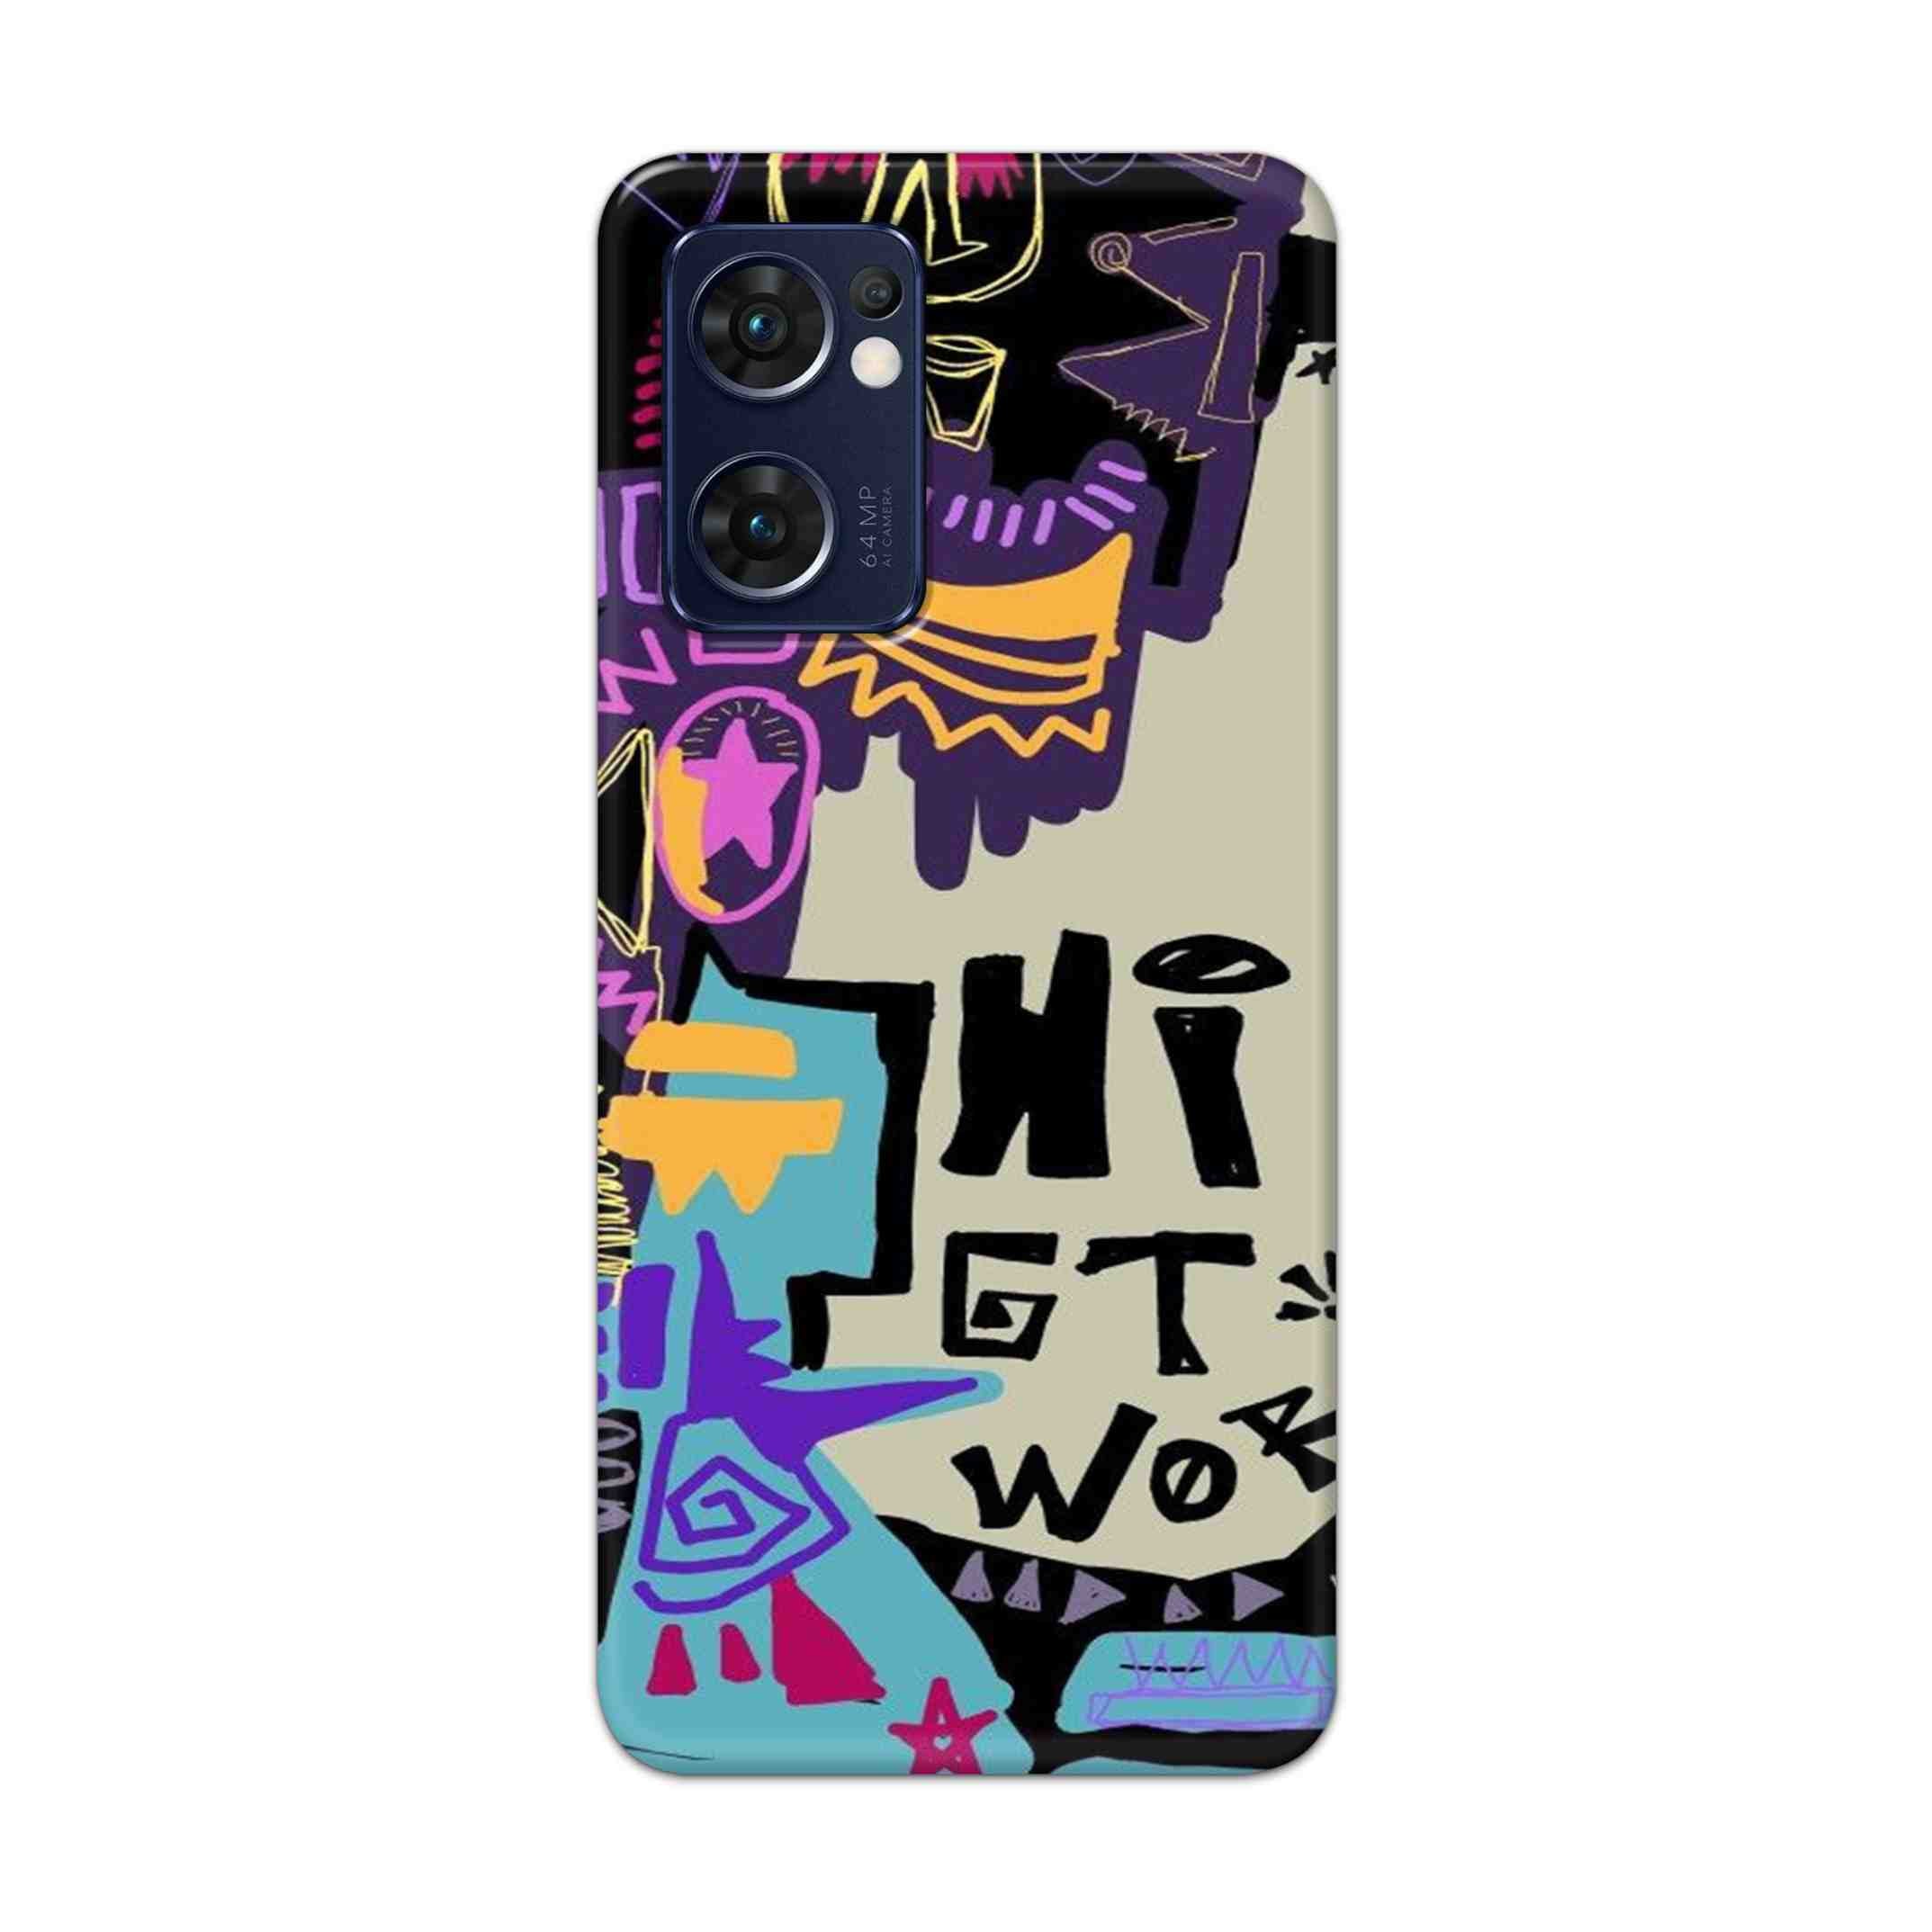 Buy Hi Gt World Hard Back Mobile Phone Case Cover For Reno 7 5G Online